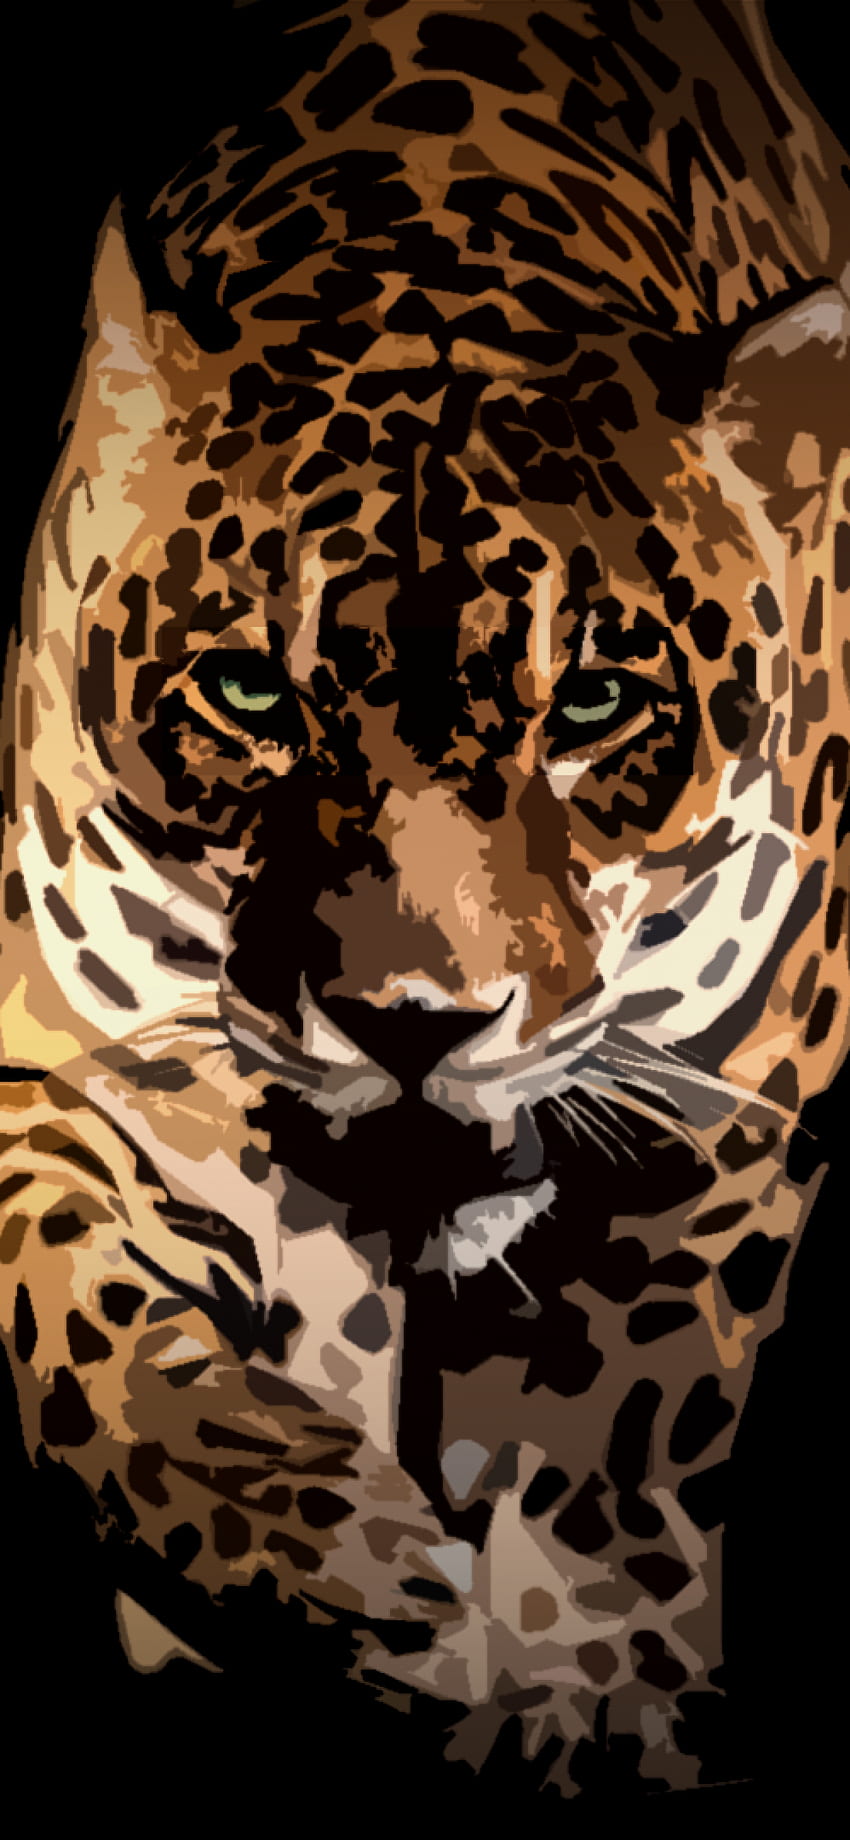 Wallpaper ID 476370  Animal Jaguar Phone Wallpaper  720x1280 free  download